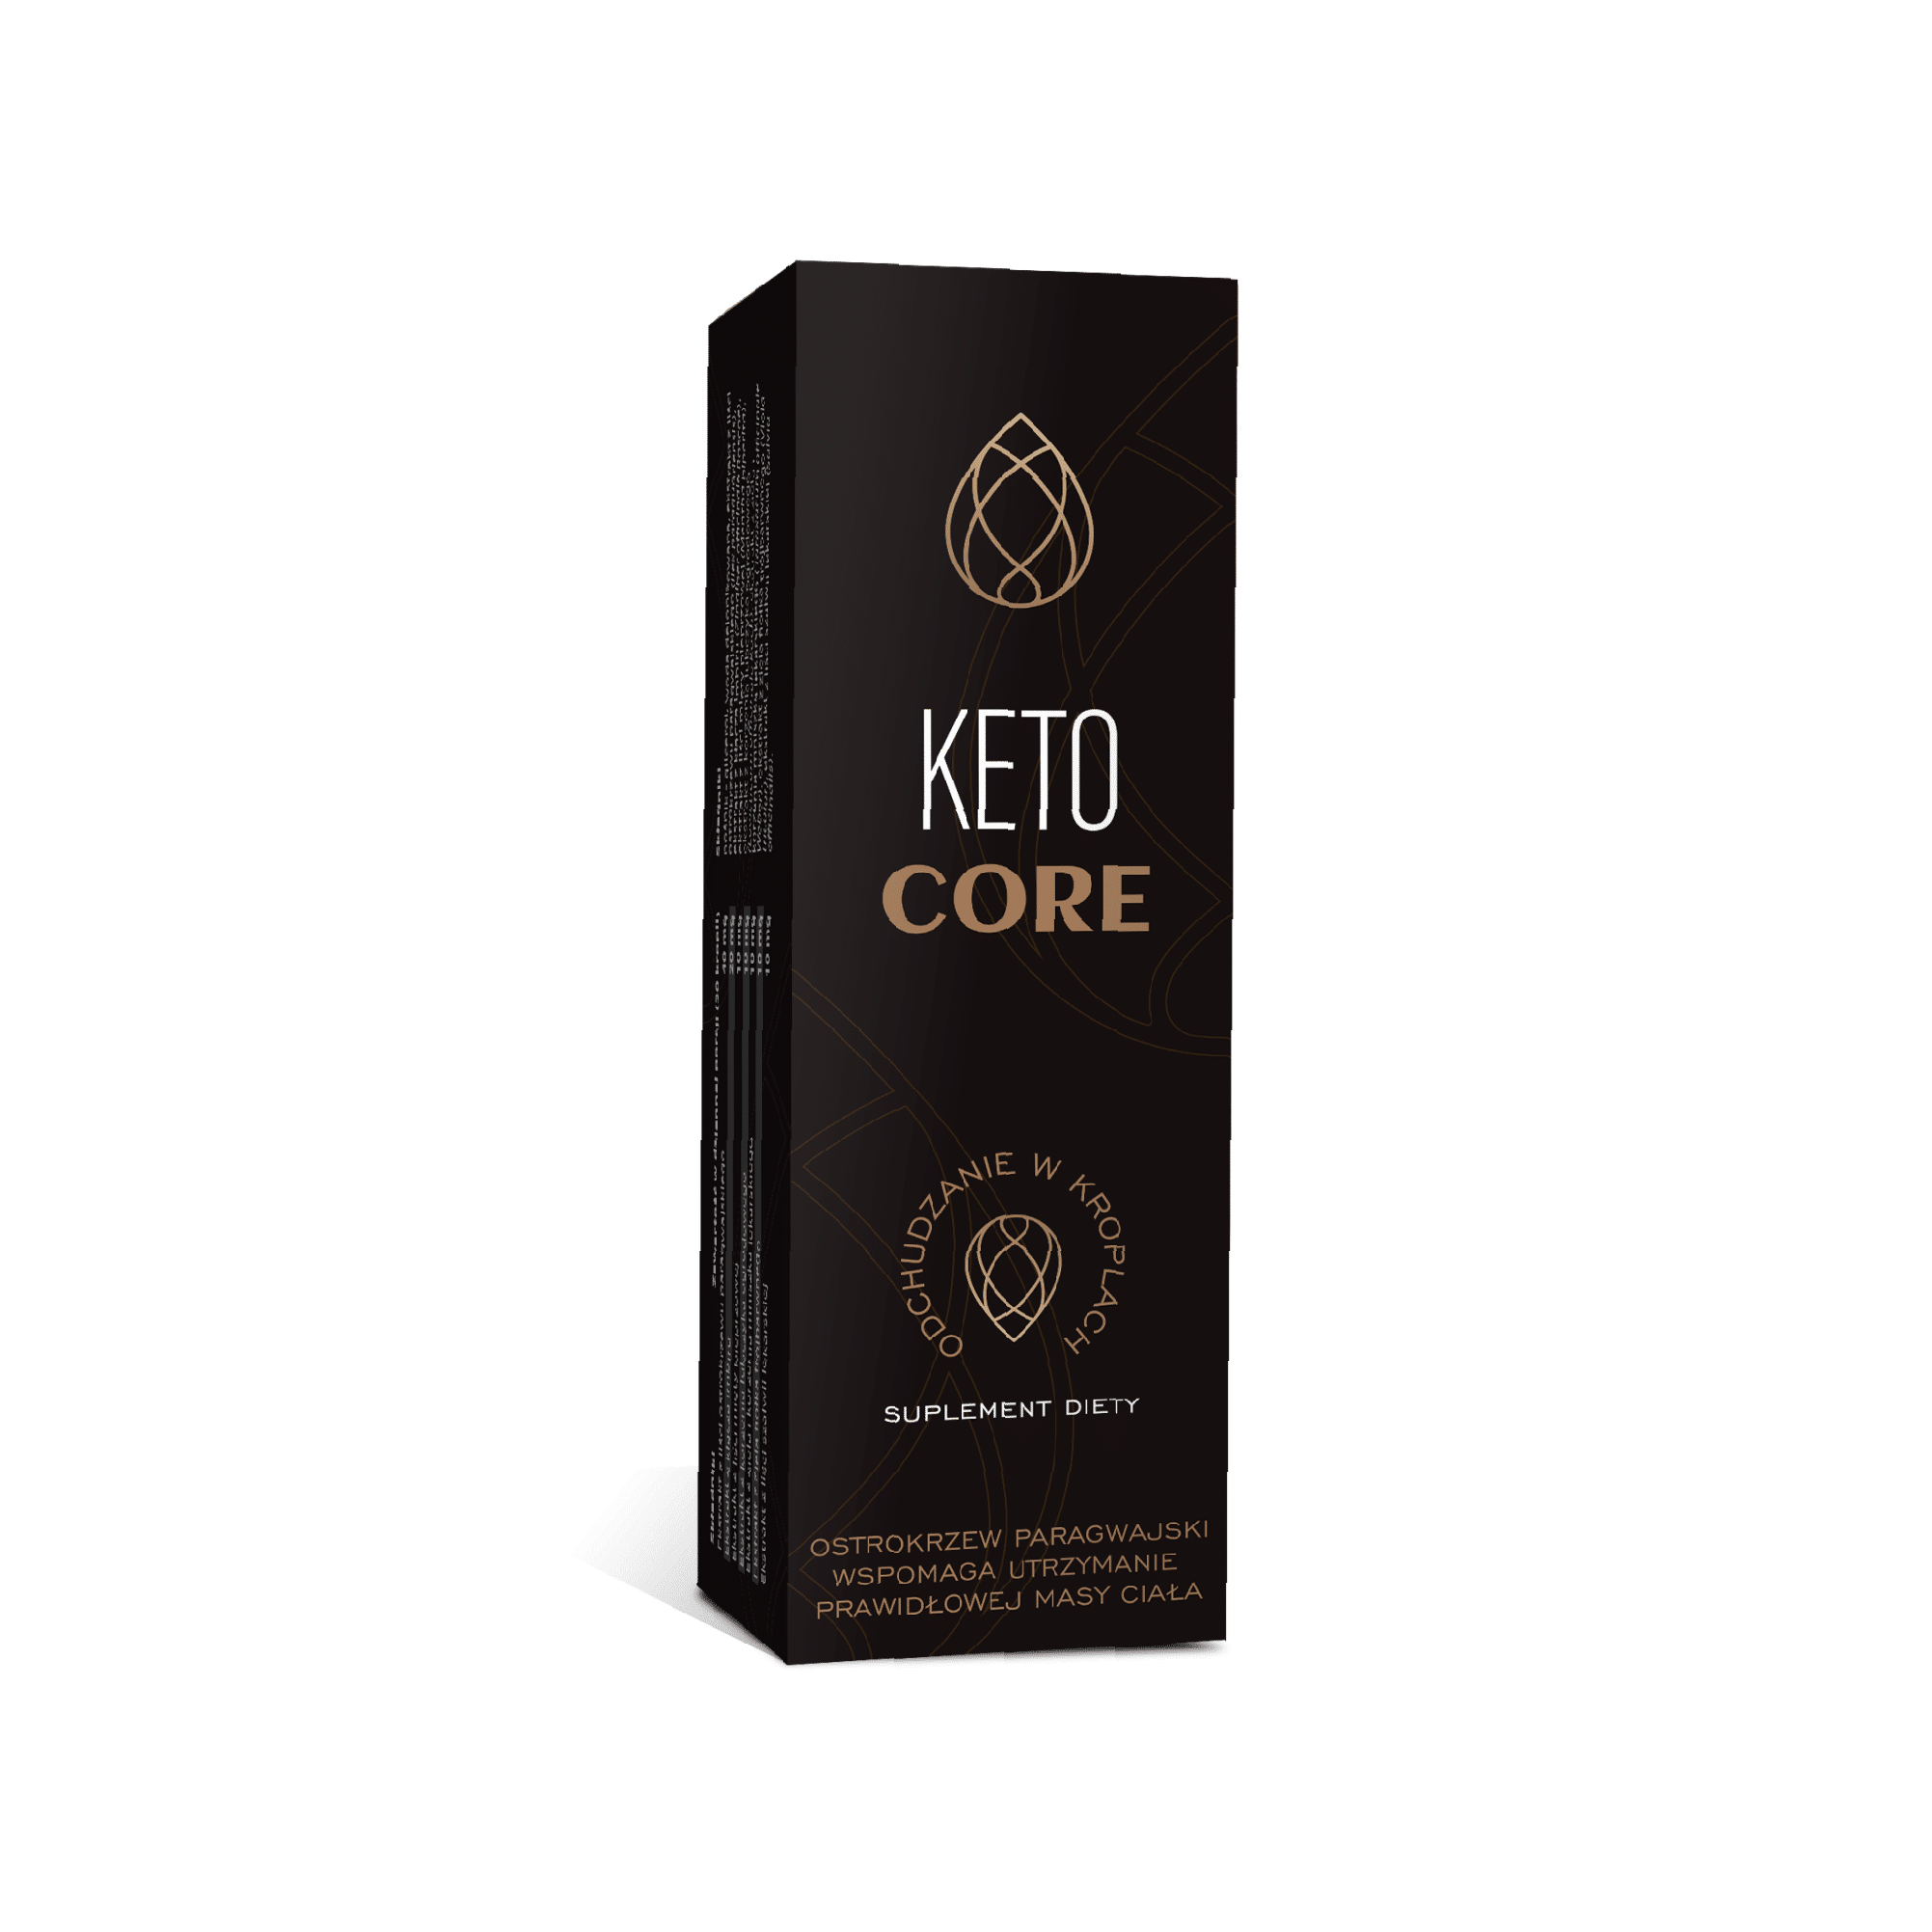 Keto Core - what is it